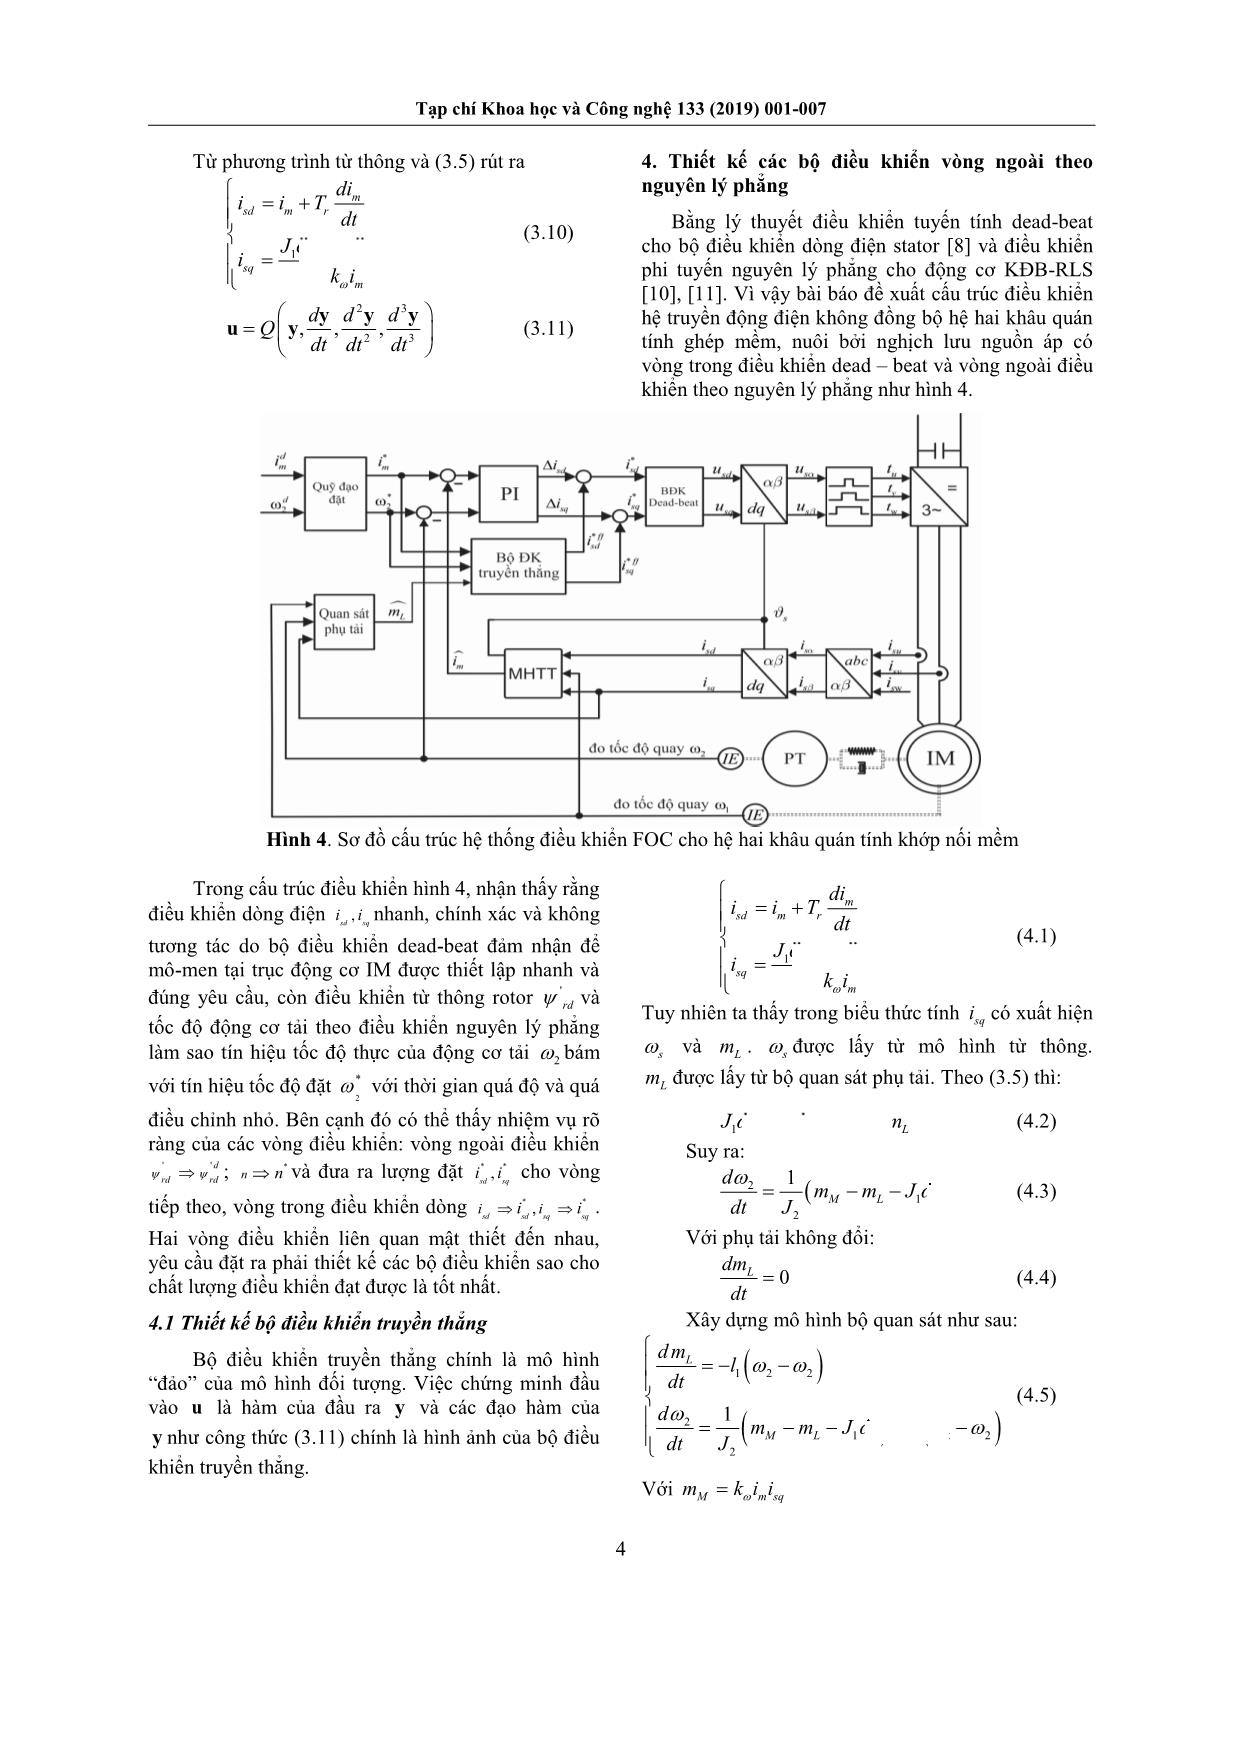 Thiết kế điều khiển phẳng truyền động điện không đồng bộ hệ hai khâu quán tính ghép mềm nuôi bởi nghịch lưu nguồn áp có vòng điều khiển dòng stator lý tưởng trang 4